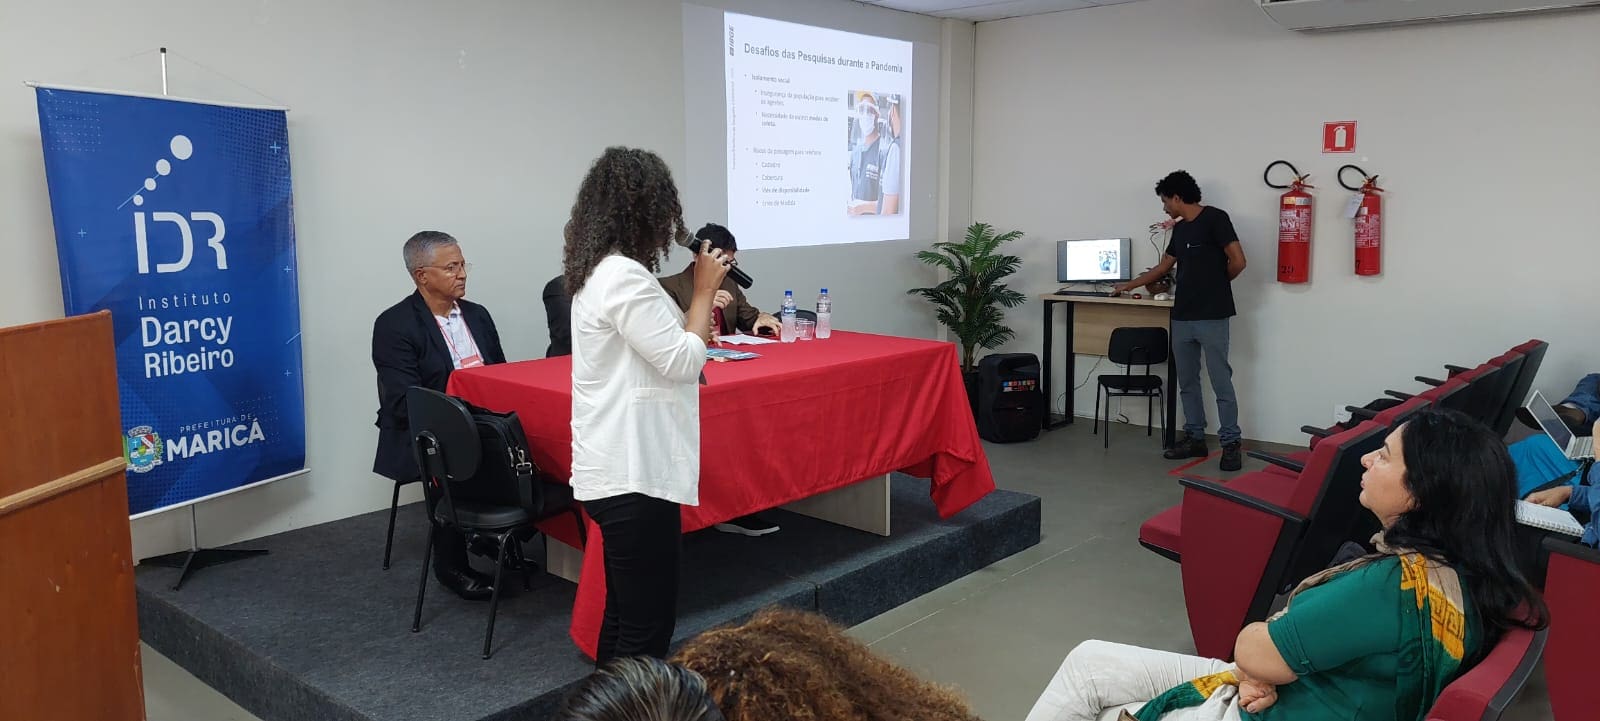 Institutos de pesquisa debatem em Maricá novos métodos para formulação de políticas públicas